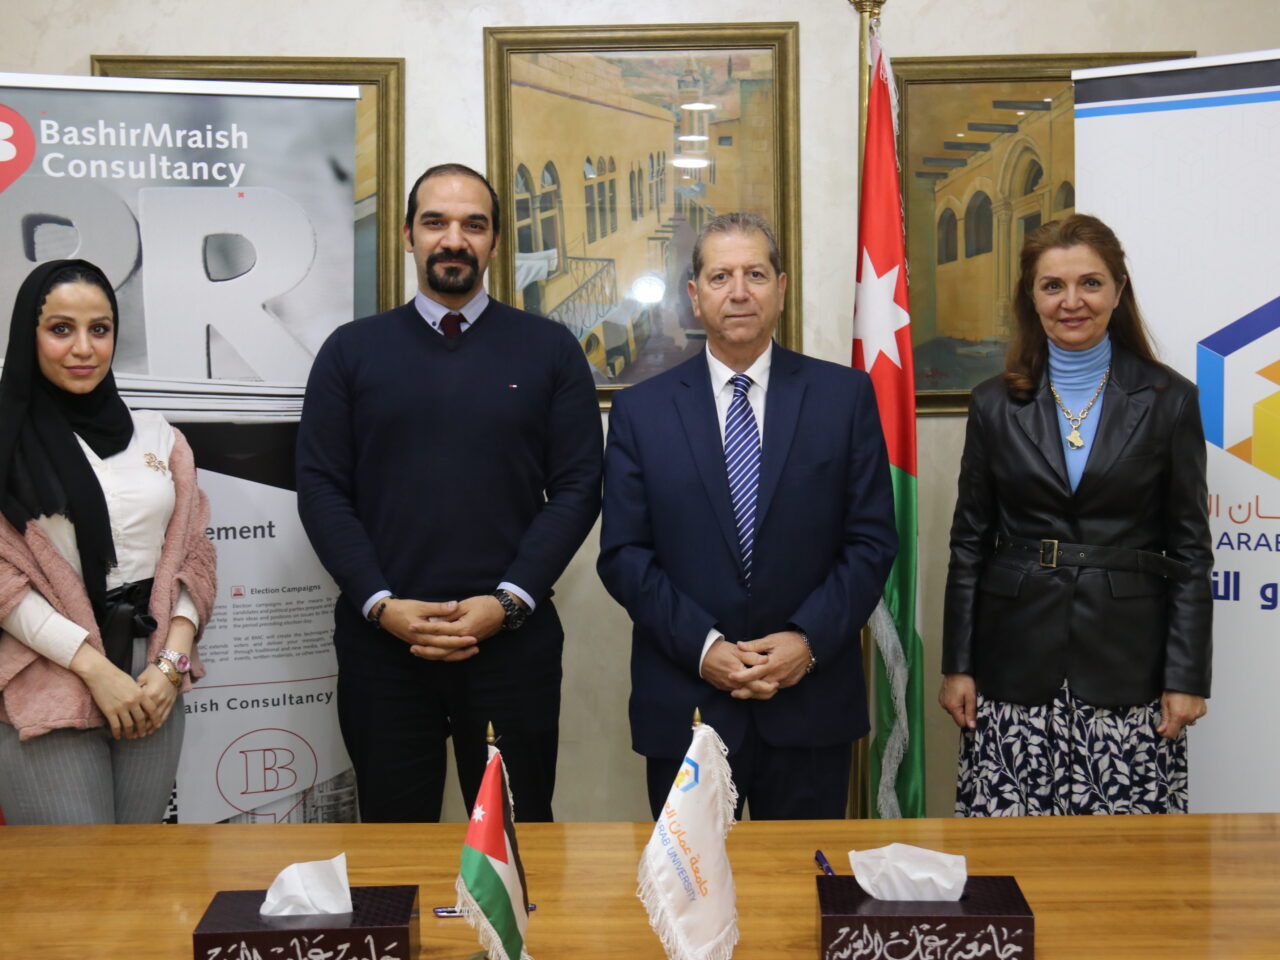 جامعة عمان العربية تعتمد شركة بشير مريش للاستشارات الإعلامية لتقديم برامج الدبلوم التدريبي والدورات التدريبية المتخصصة